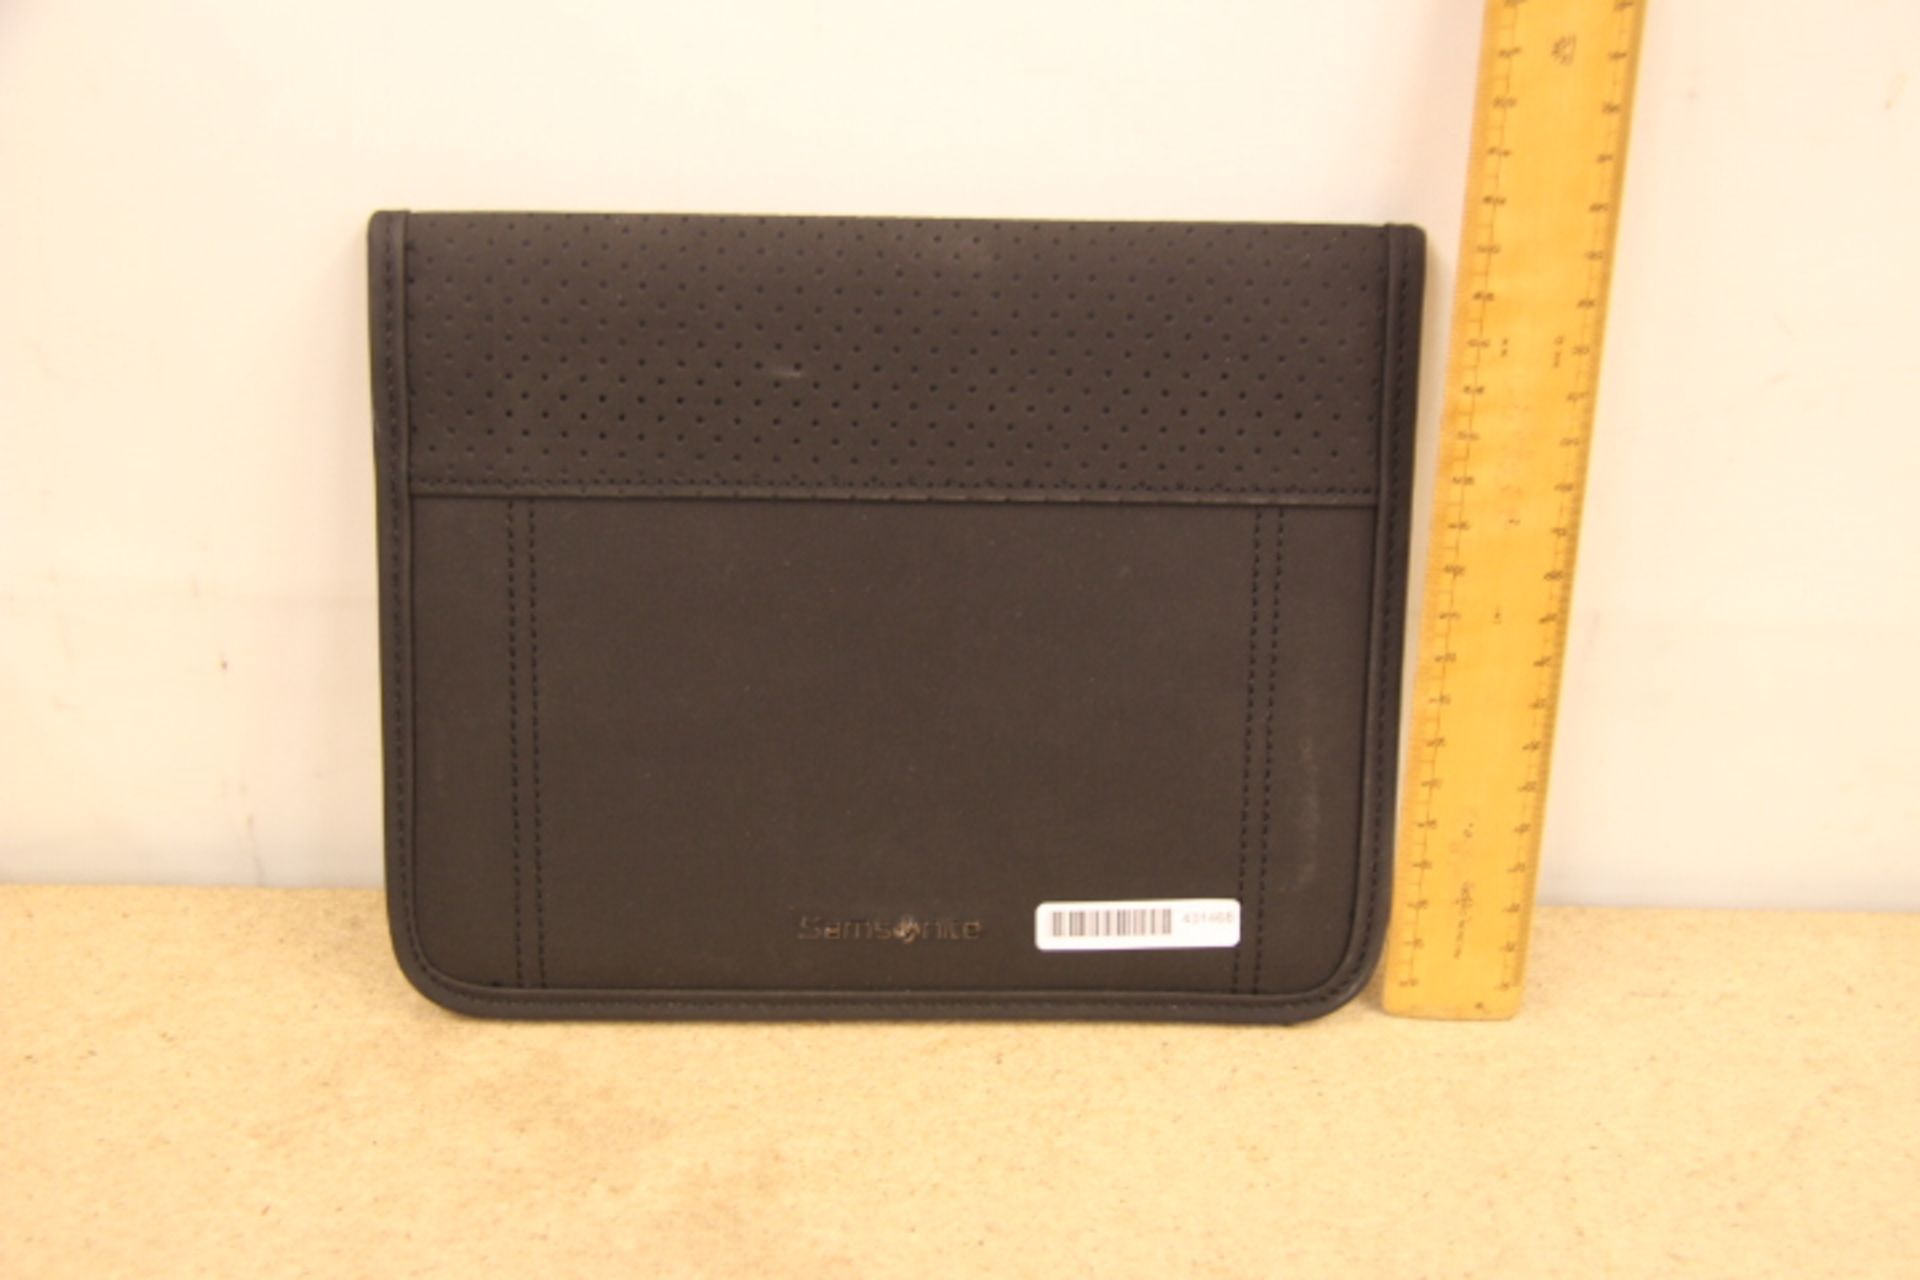 V Brand New Samsonite Black Executive Folder With-Pen Pocket-Card Pocket - Image 2 of 2